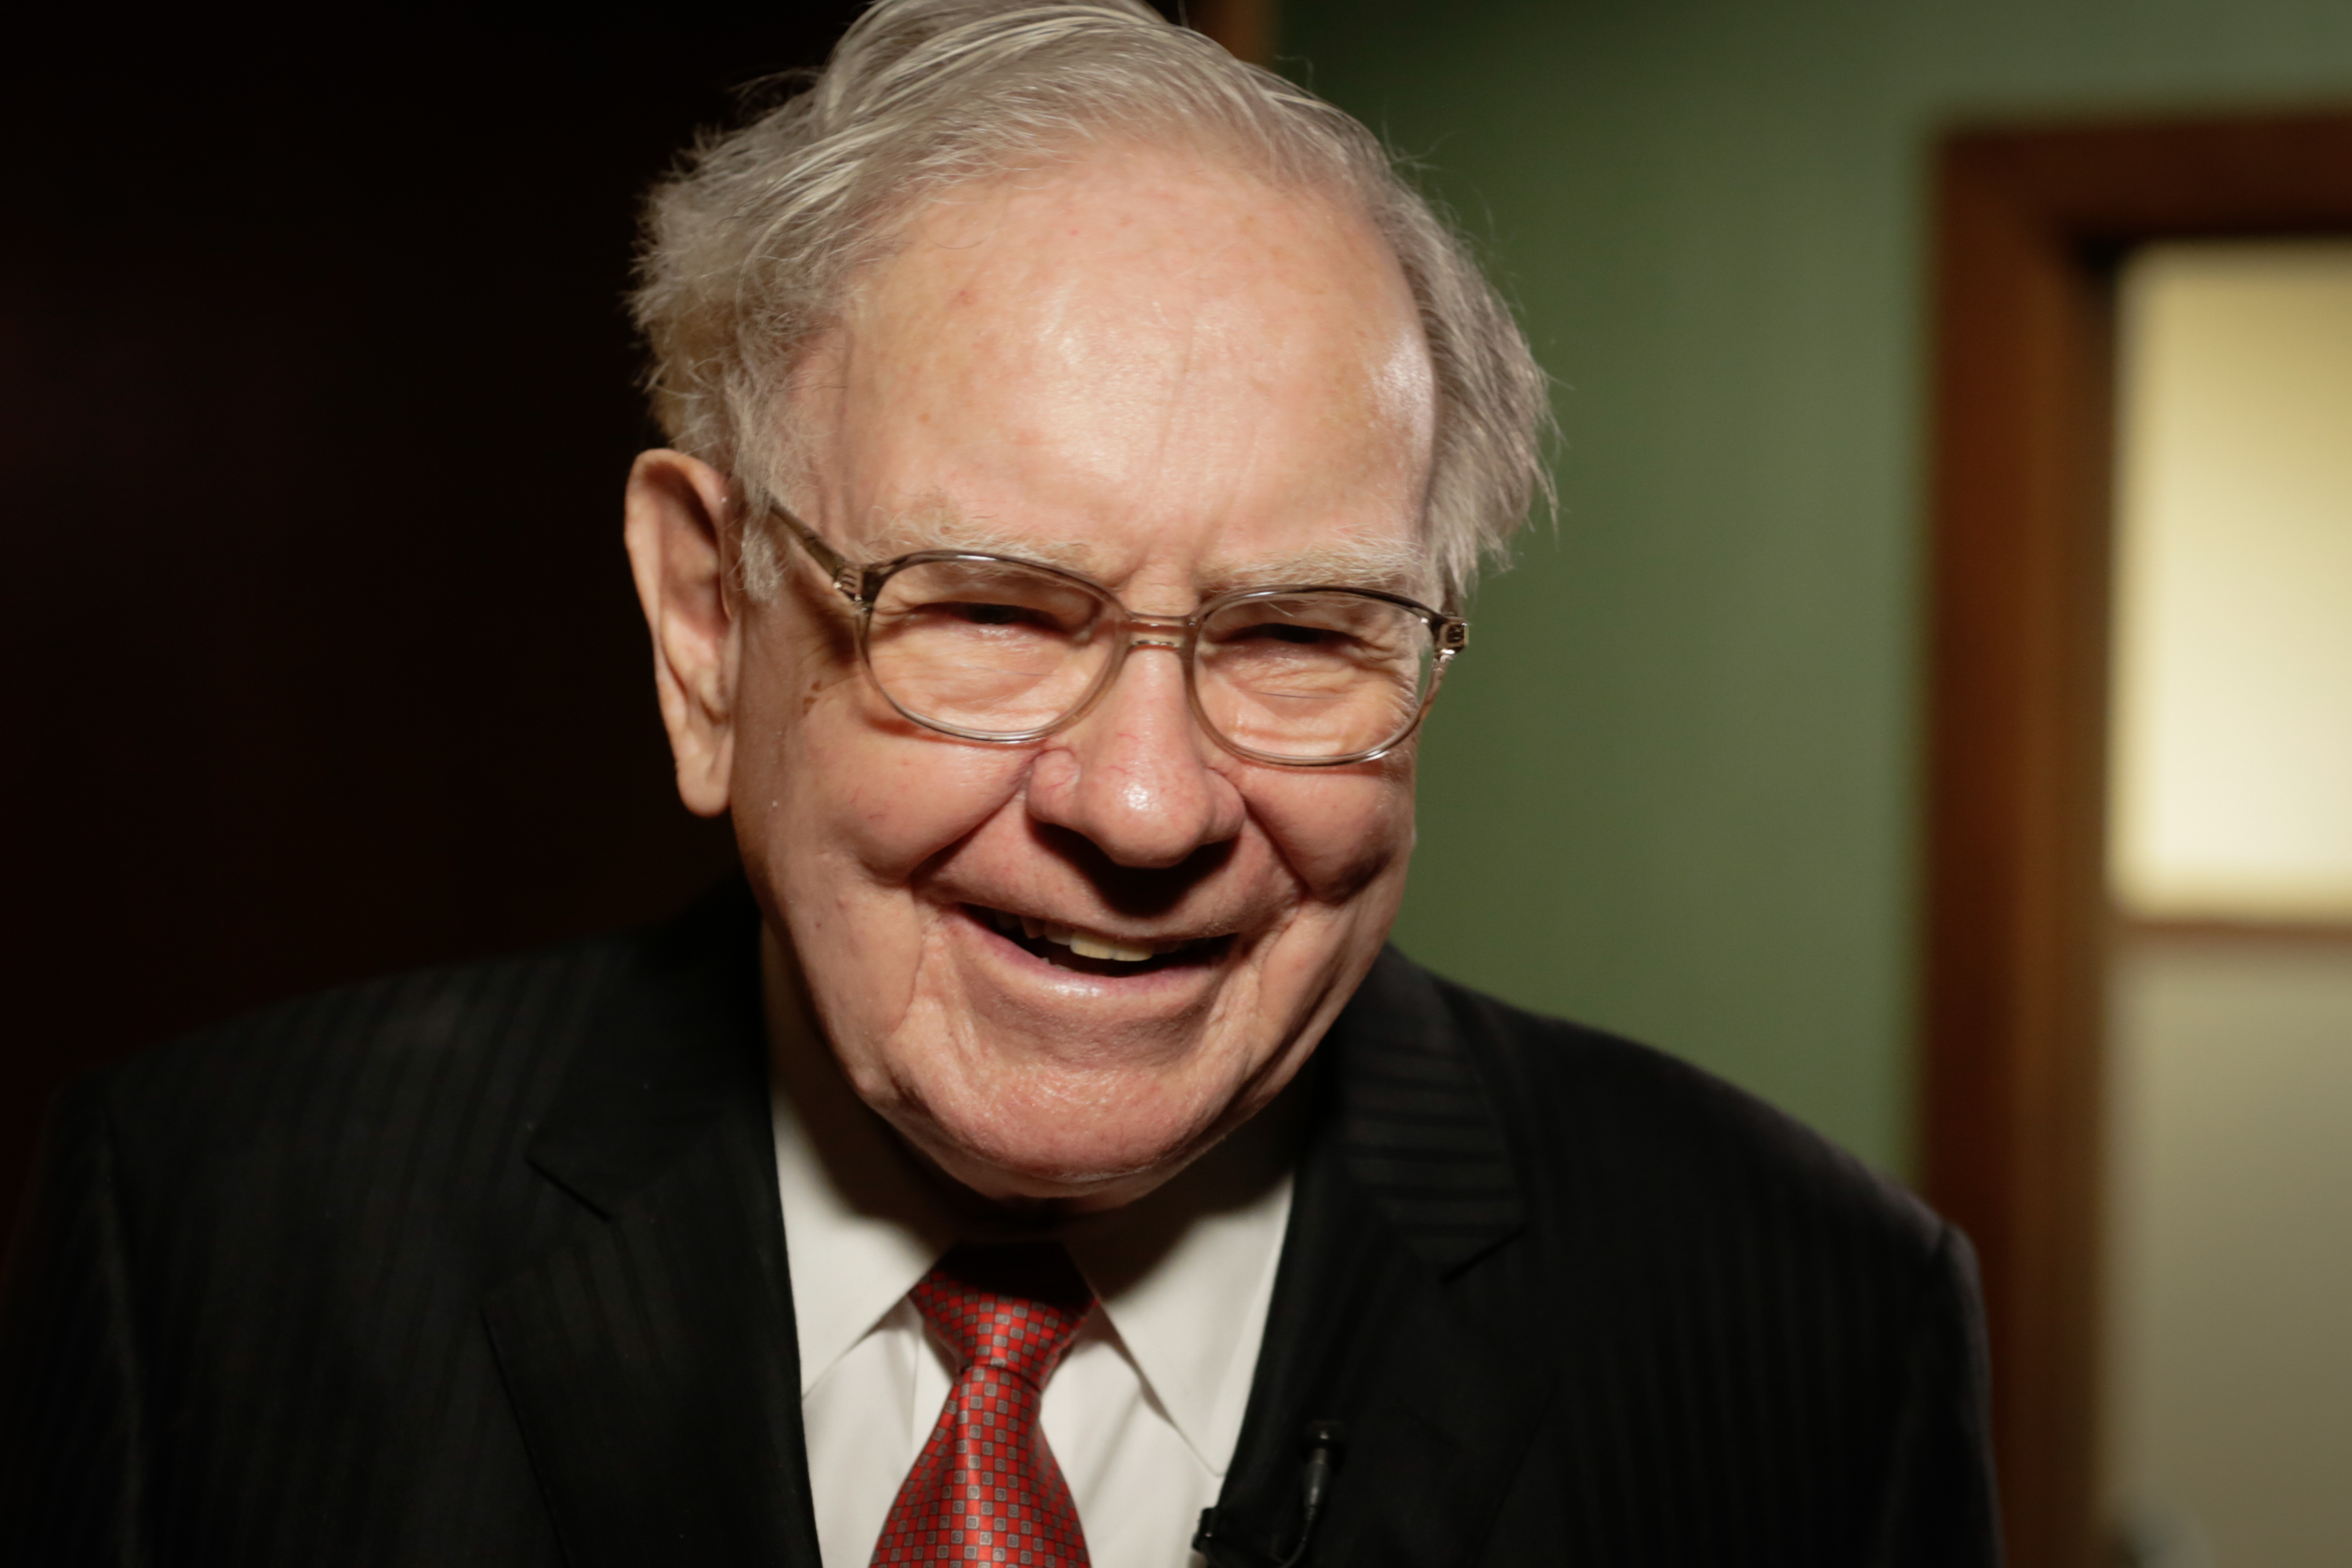 Warren Buffett's Net Worth Just Hit an All-Time High